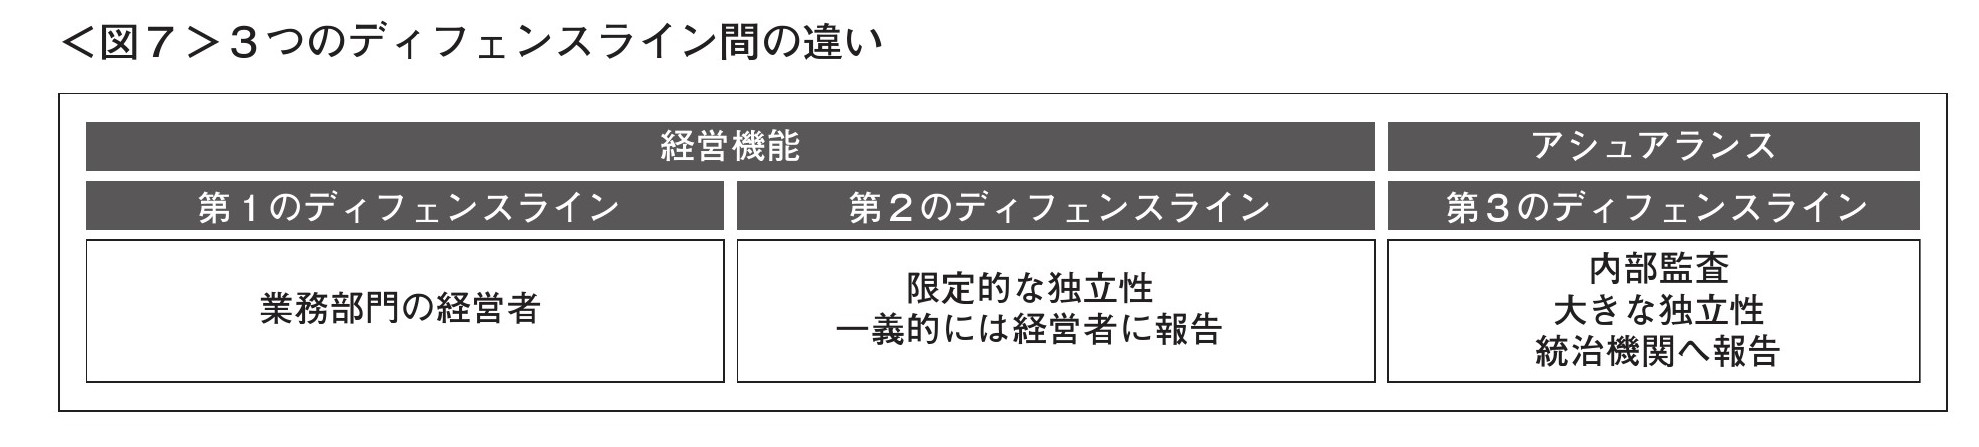 2015103つのディフェンスライン_PAGE6